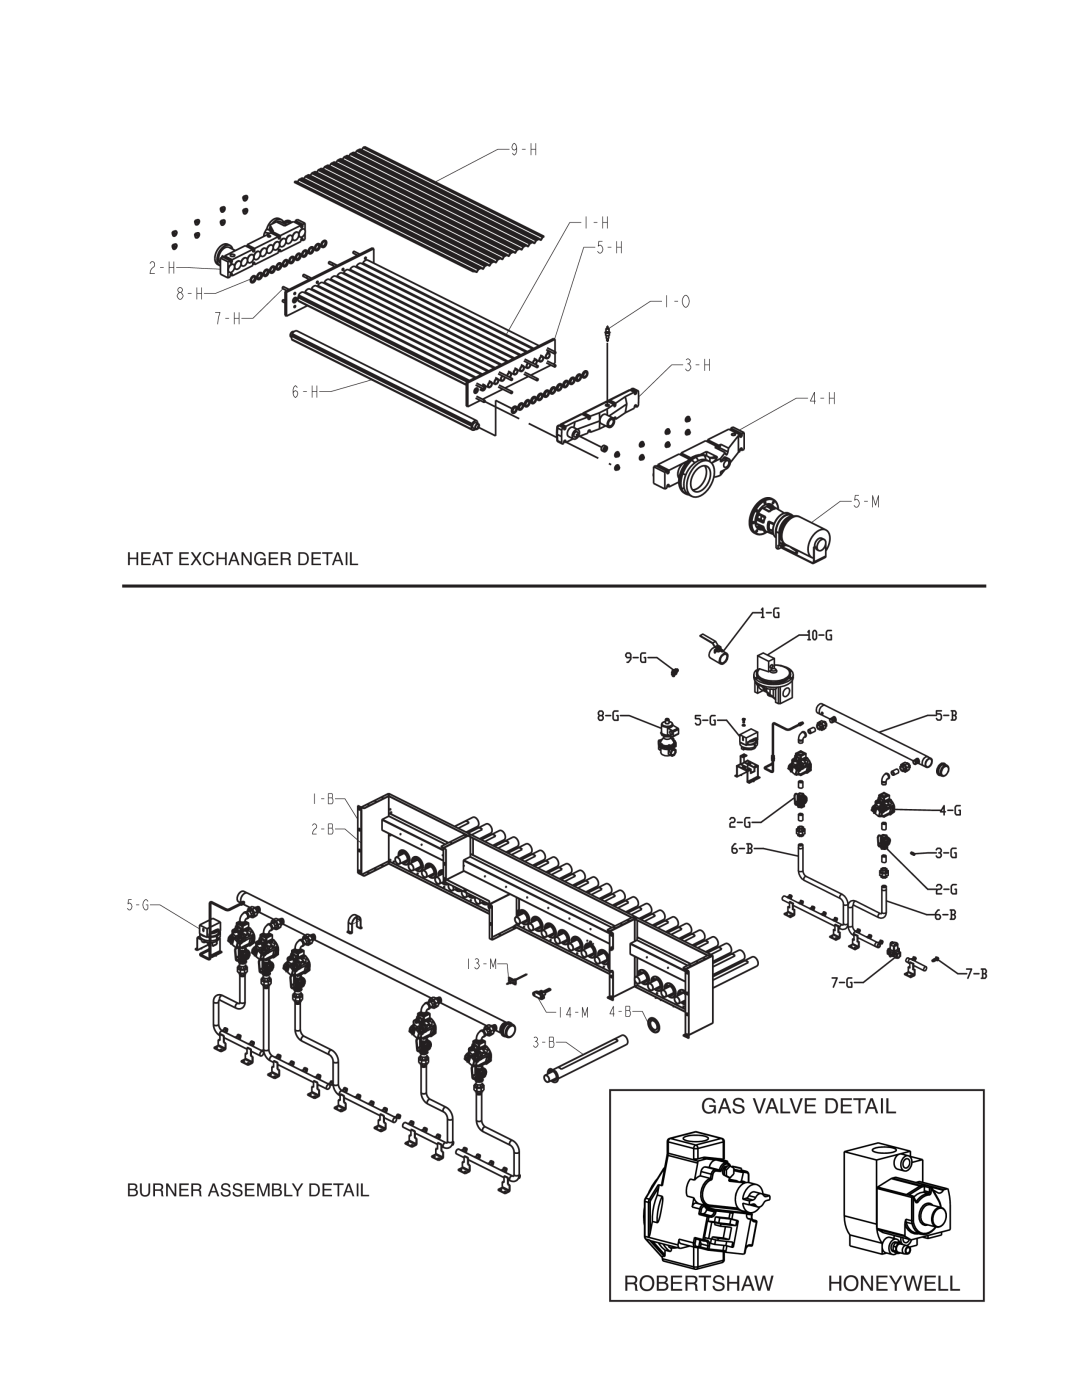 Raypak 2002B, 2072B manual Gas Valve Detail Robertshawhoneywell, Heat Exchanger Detail, Burner Assembly Detail 